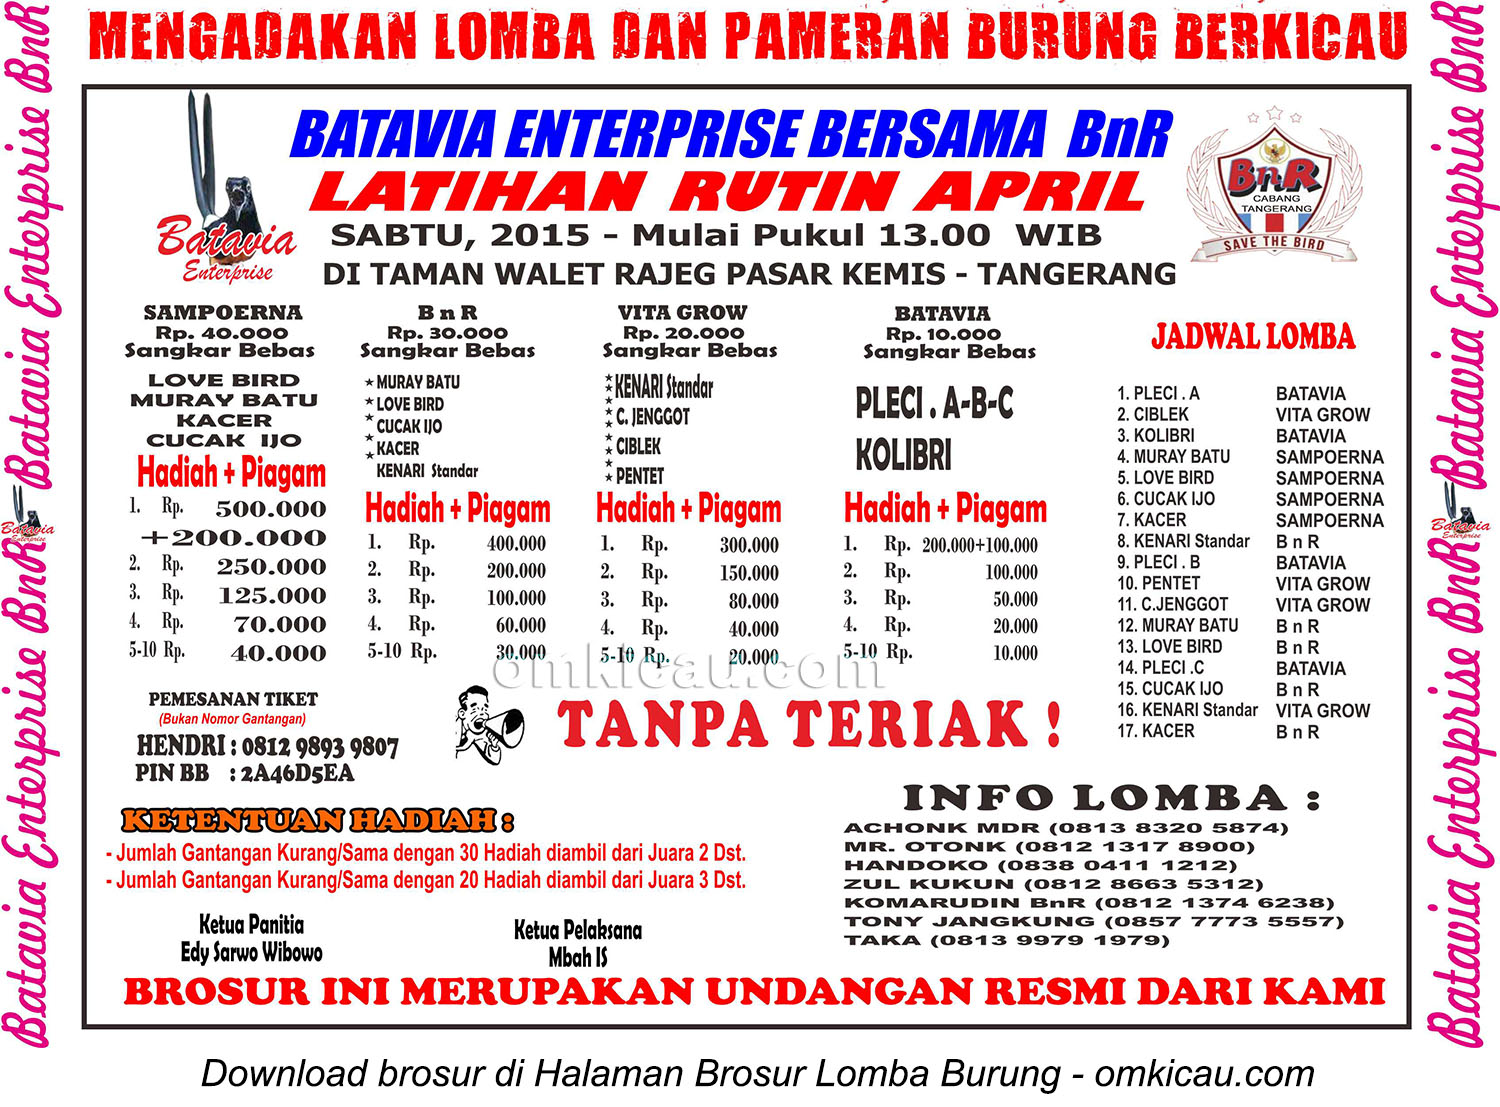 Brosur Latihan Rutin April Batavia Enterprise, Tangerang, setiap Sabtu pukul 13